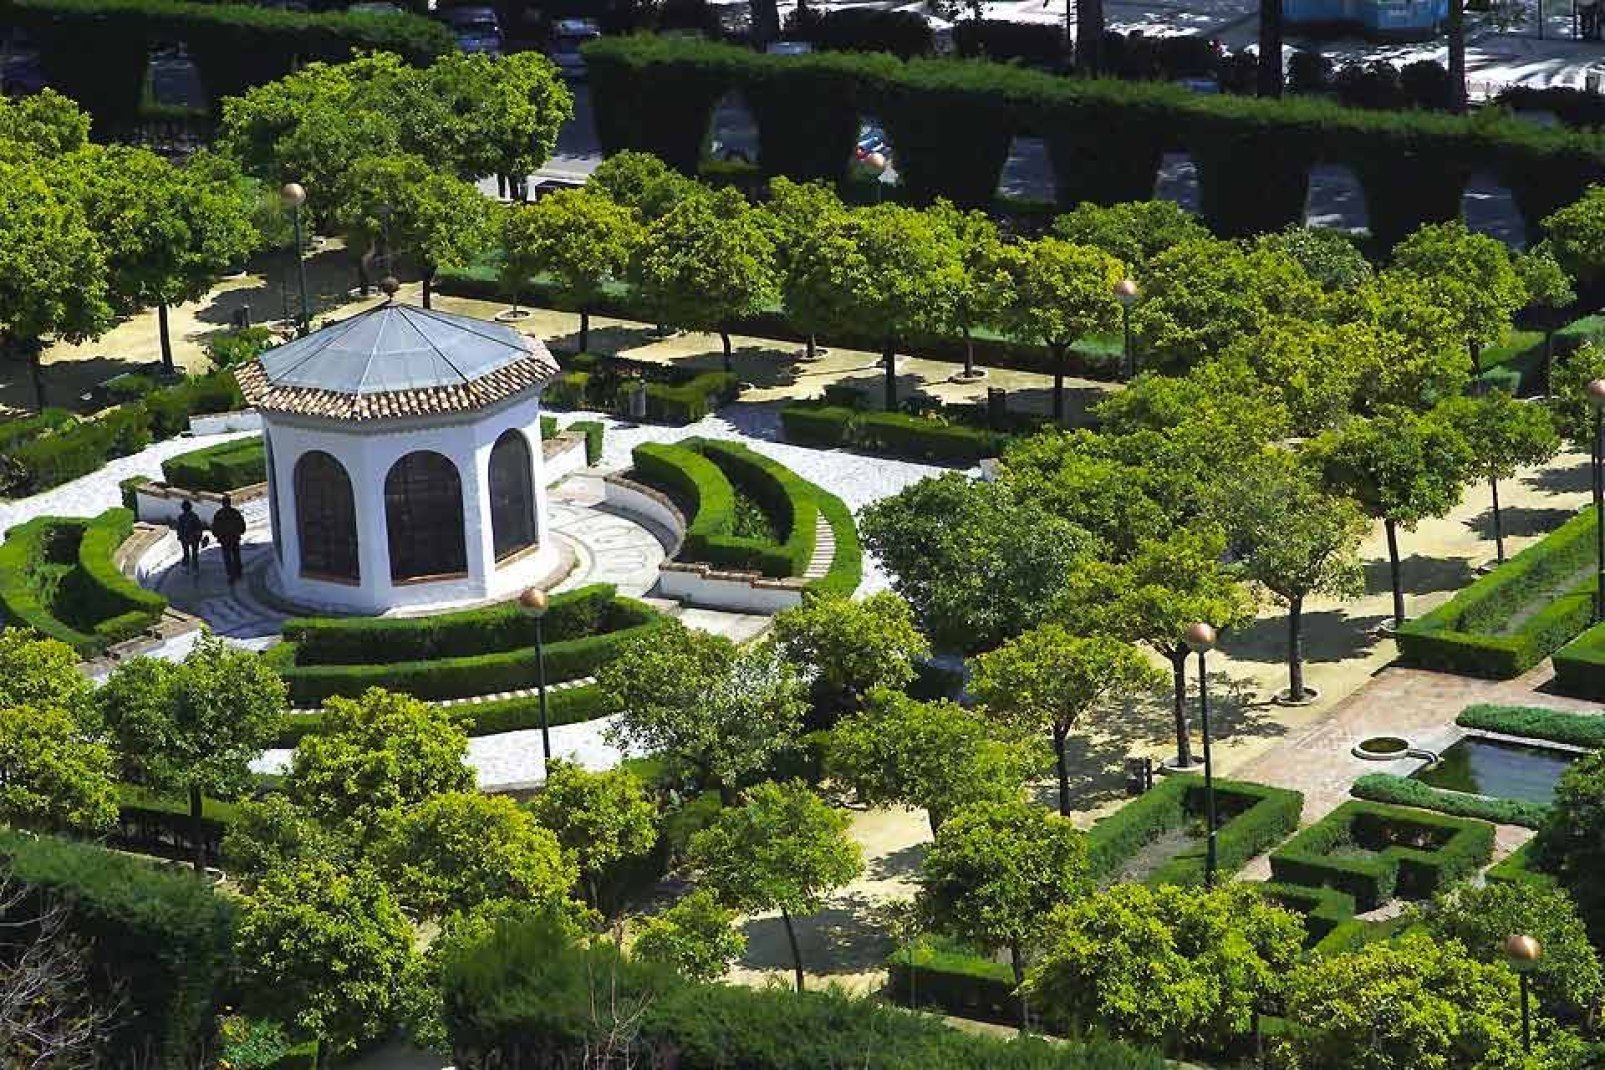 Questo giardino tropicale è il più bello e il più importante della Spagna. Situato a soli 5 km dalla città di Málaga, riserva ai turisti una visita indimenticabile.